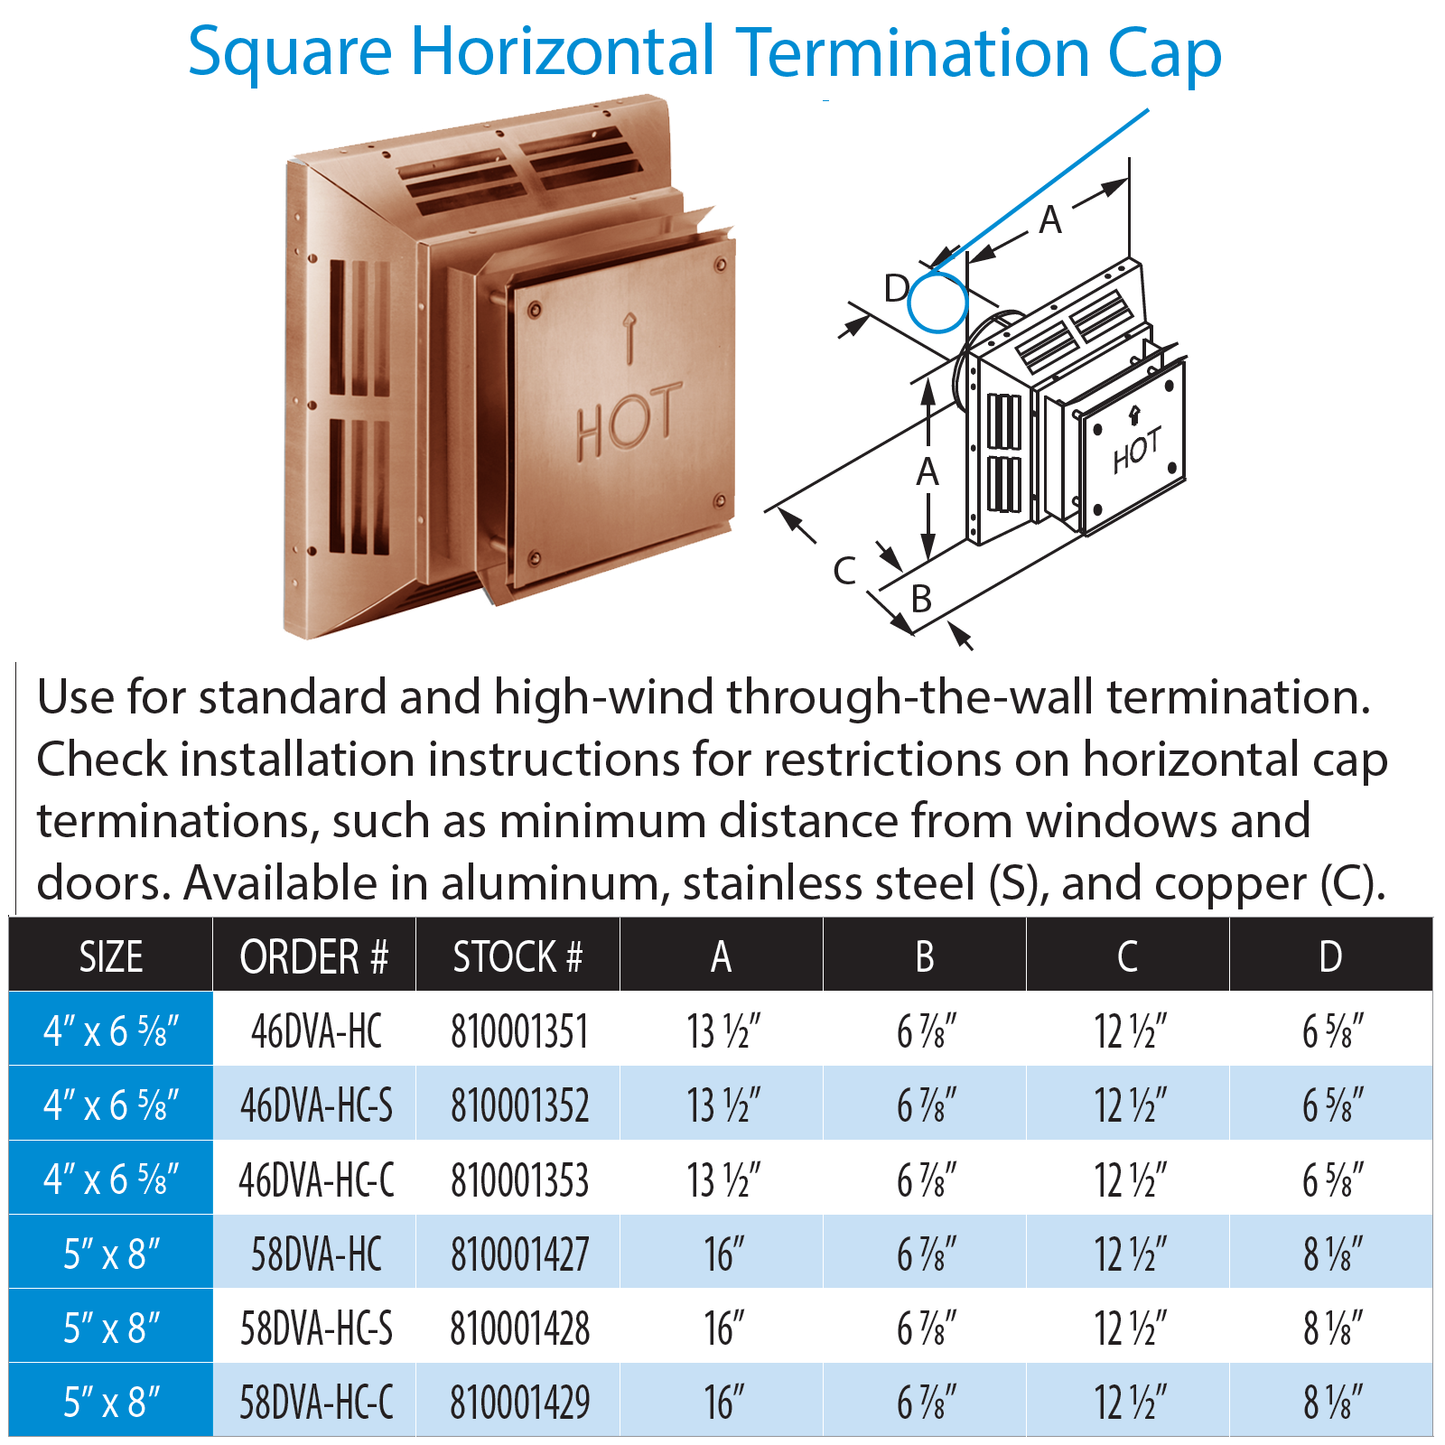 DuraVent DVP Square Horizontal Termination Cap Copper | 58DVA-HC-C